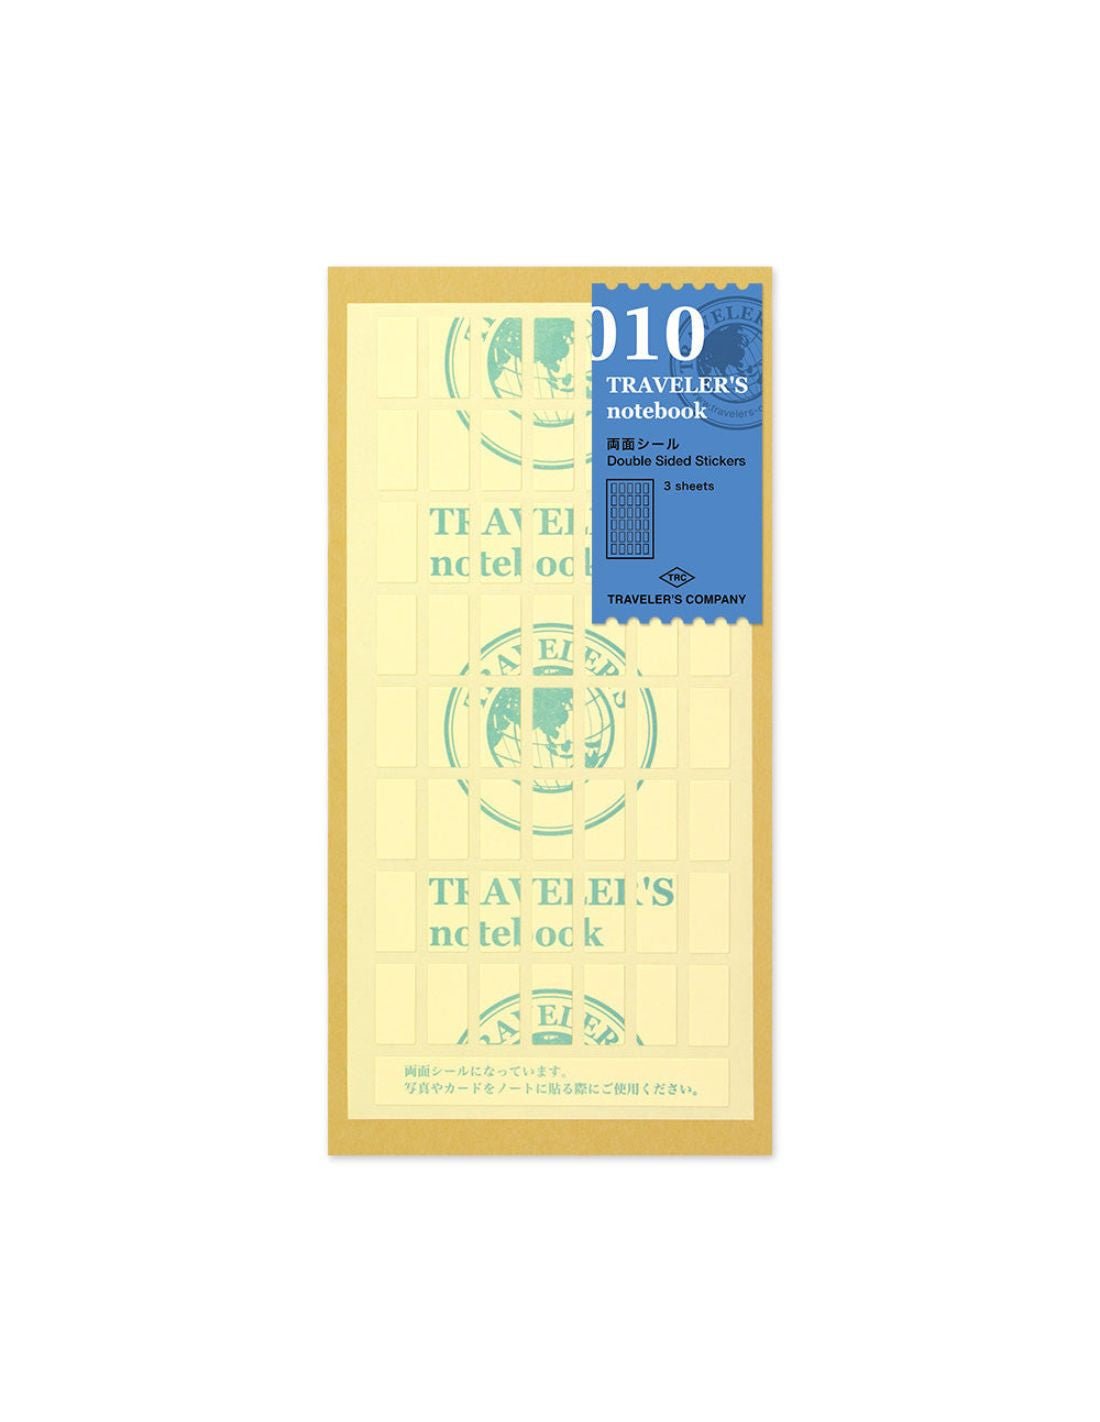 TRAVELER'S notebook 010 - adhésifs double-face (regular size) - TN Regular size - - 4902805143035